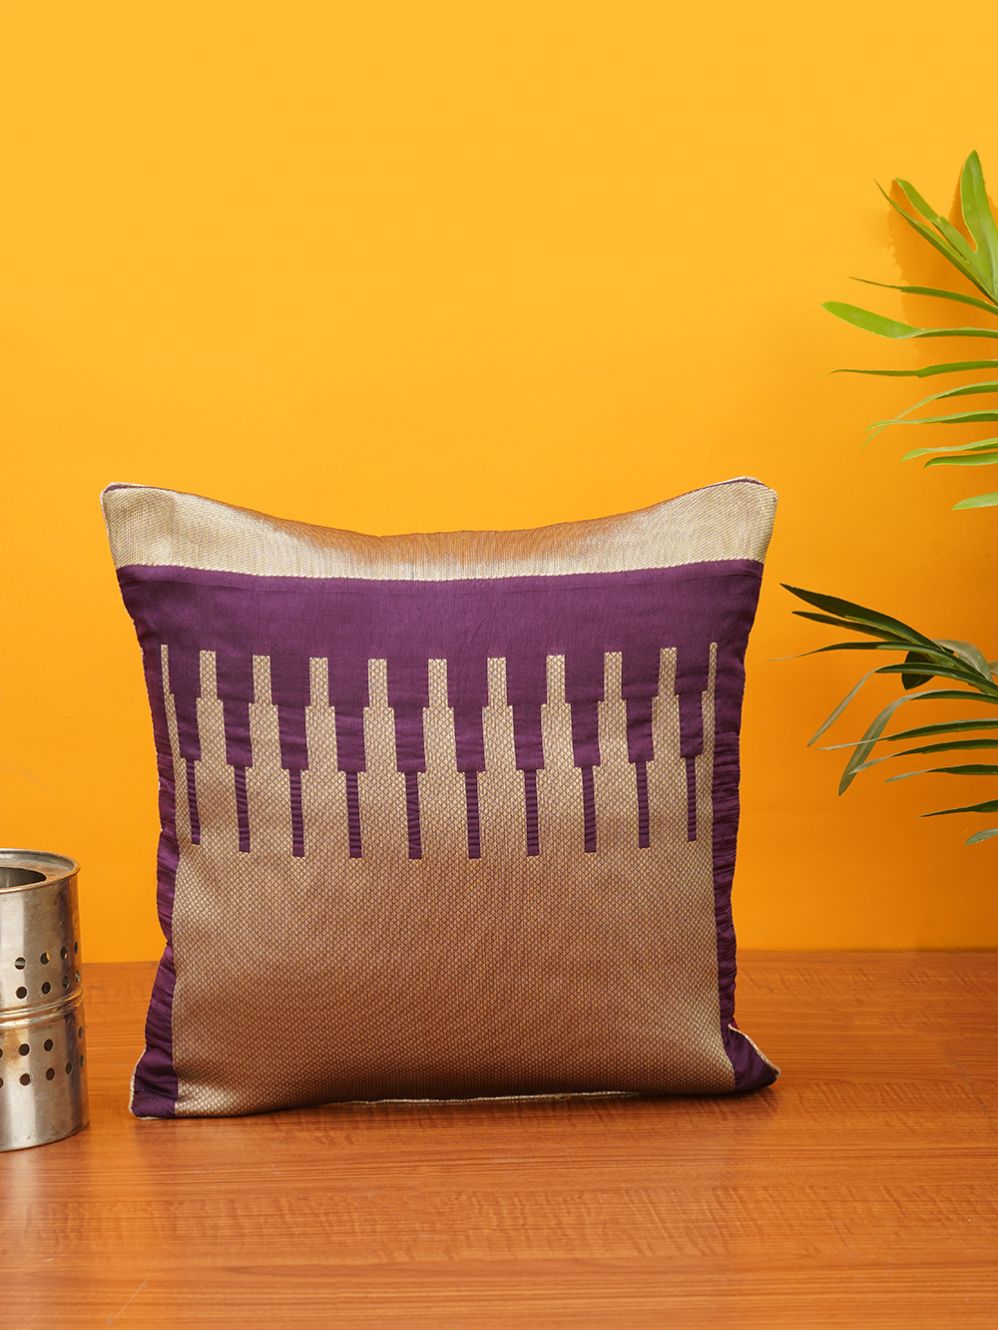 Brocade  Banarasi Cushion Cover - size 12 x 12 inch 